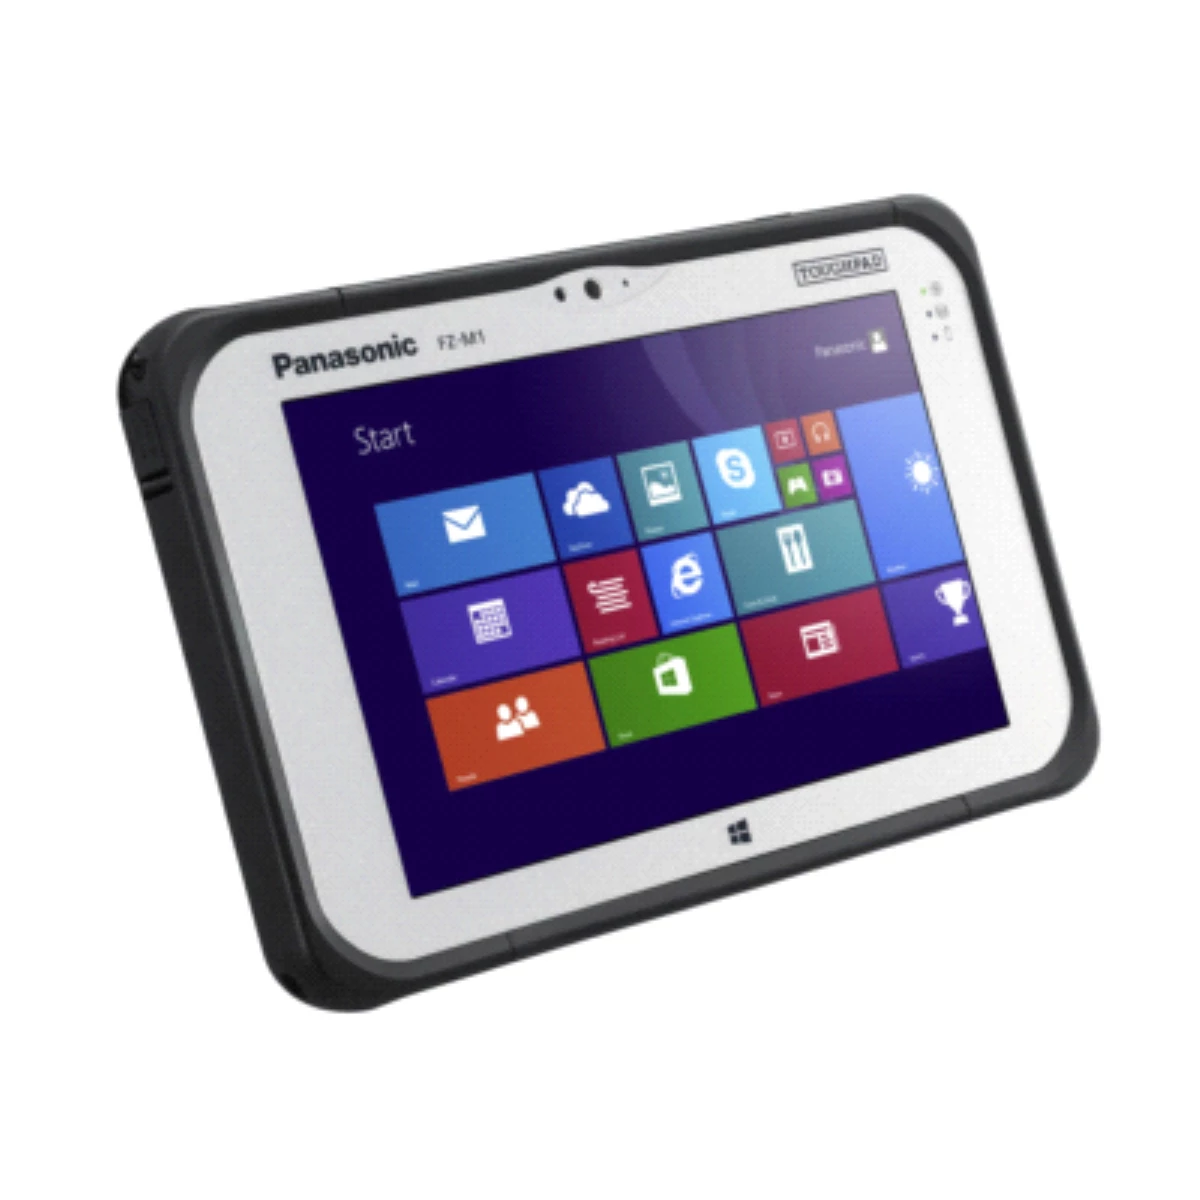 Panasonic\'ten Özellikle Zorlu Şartlarda Çalışmak İçin Tasarlanan Yepyeni Tablet: Toughpad Fz-M1